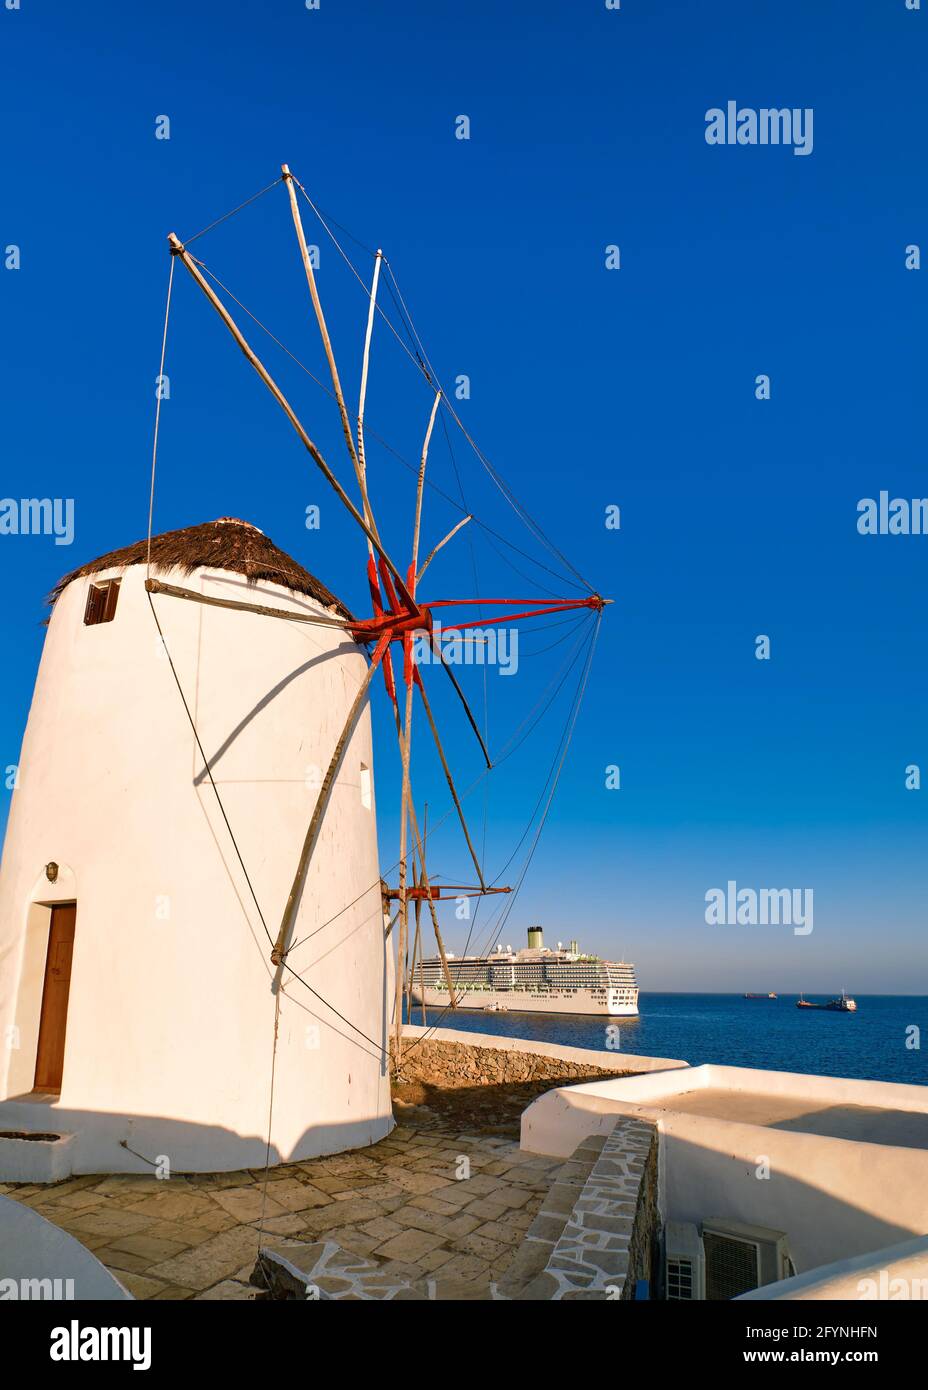 Berühmte Touristenattraktion von Mykonos, Griechenland. Traditionelle, weiß getünchte Windmühle auf dem Seeweg und Kreuzfahrtdampfer, der den Hafen verlässt. Morgen, Sommer, klarer blauer Himmel Stockfoto